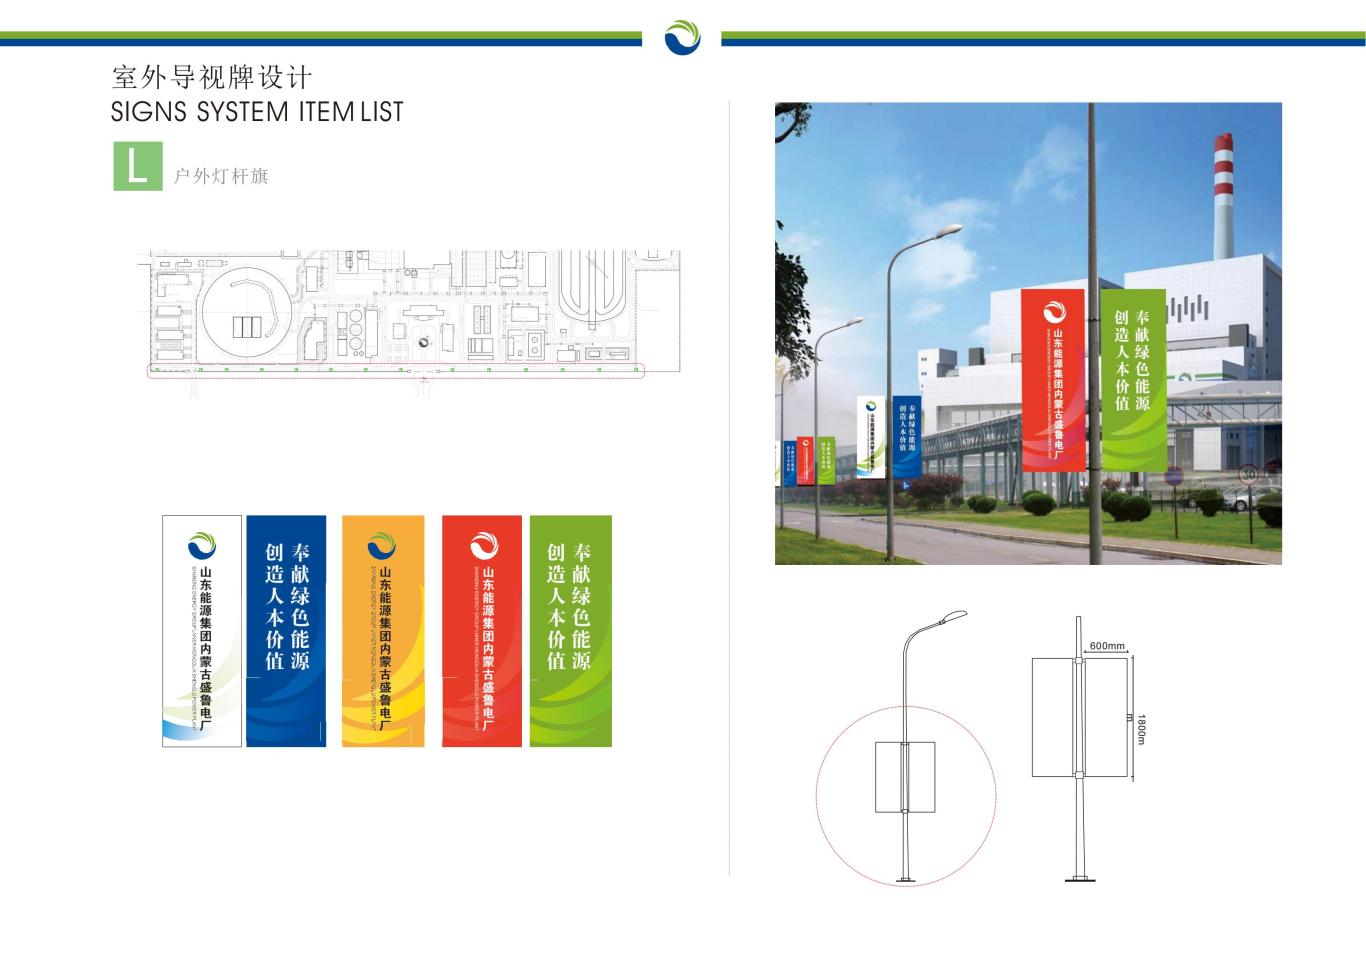 山东能源集团内蒙古盛鲁电厂标识导引方案设计图19